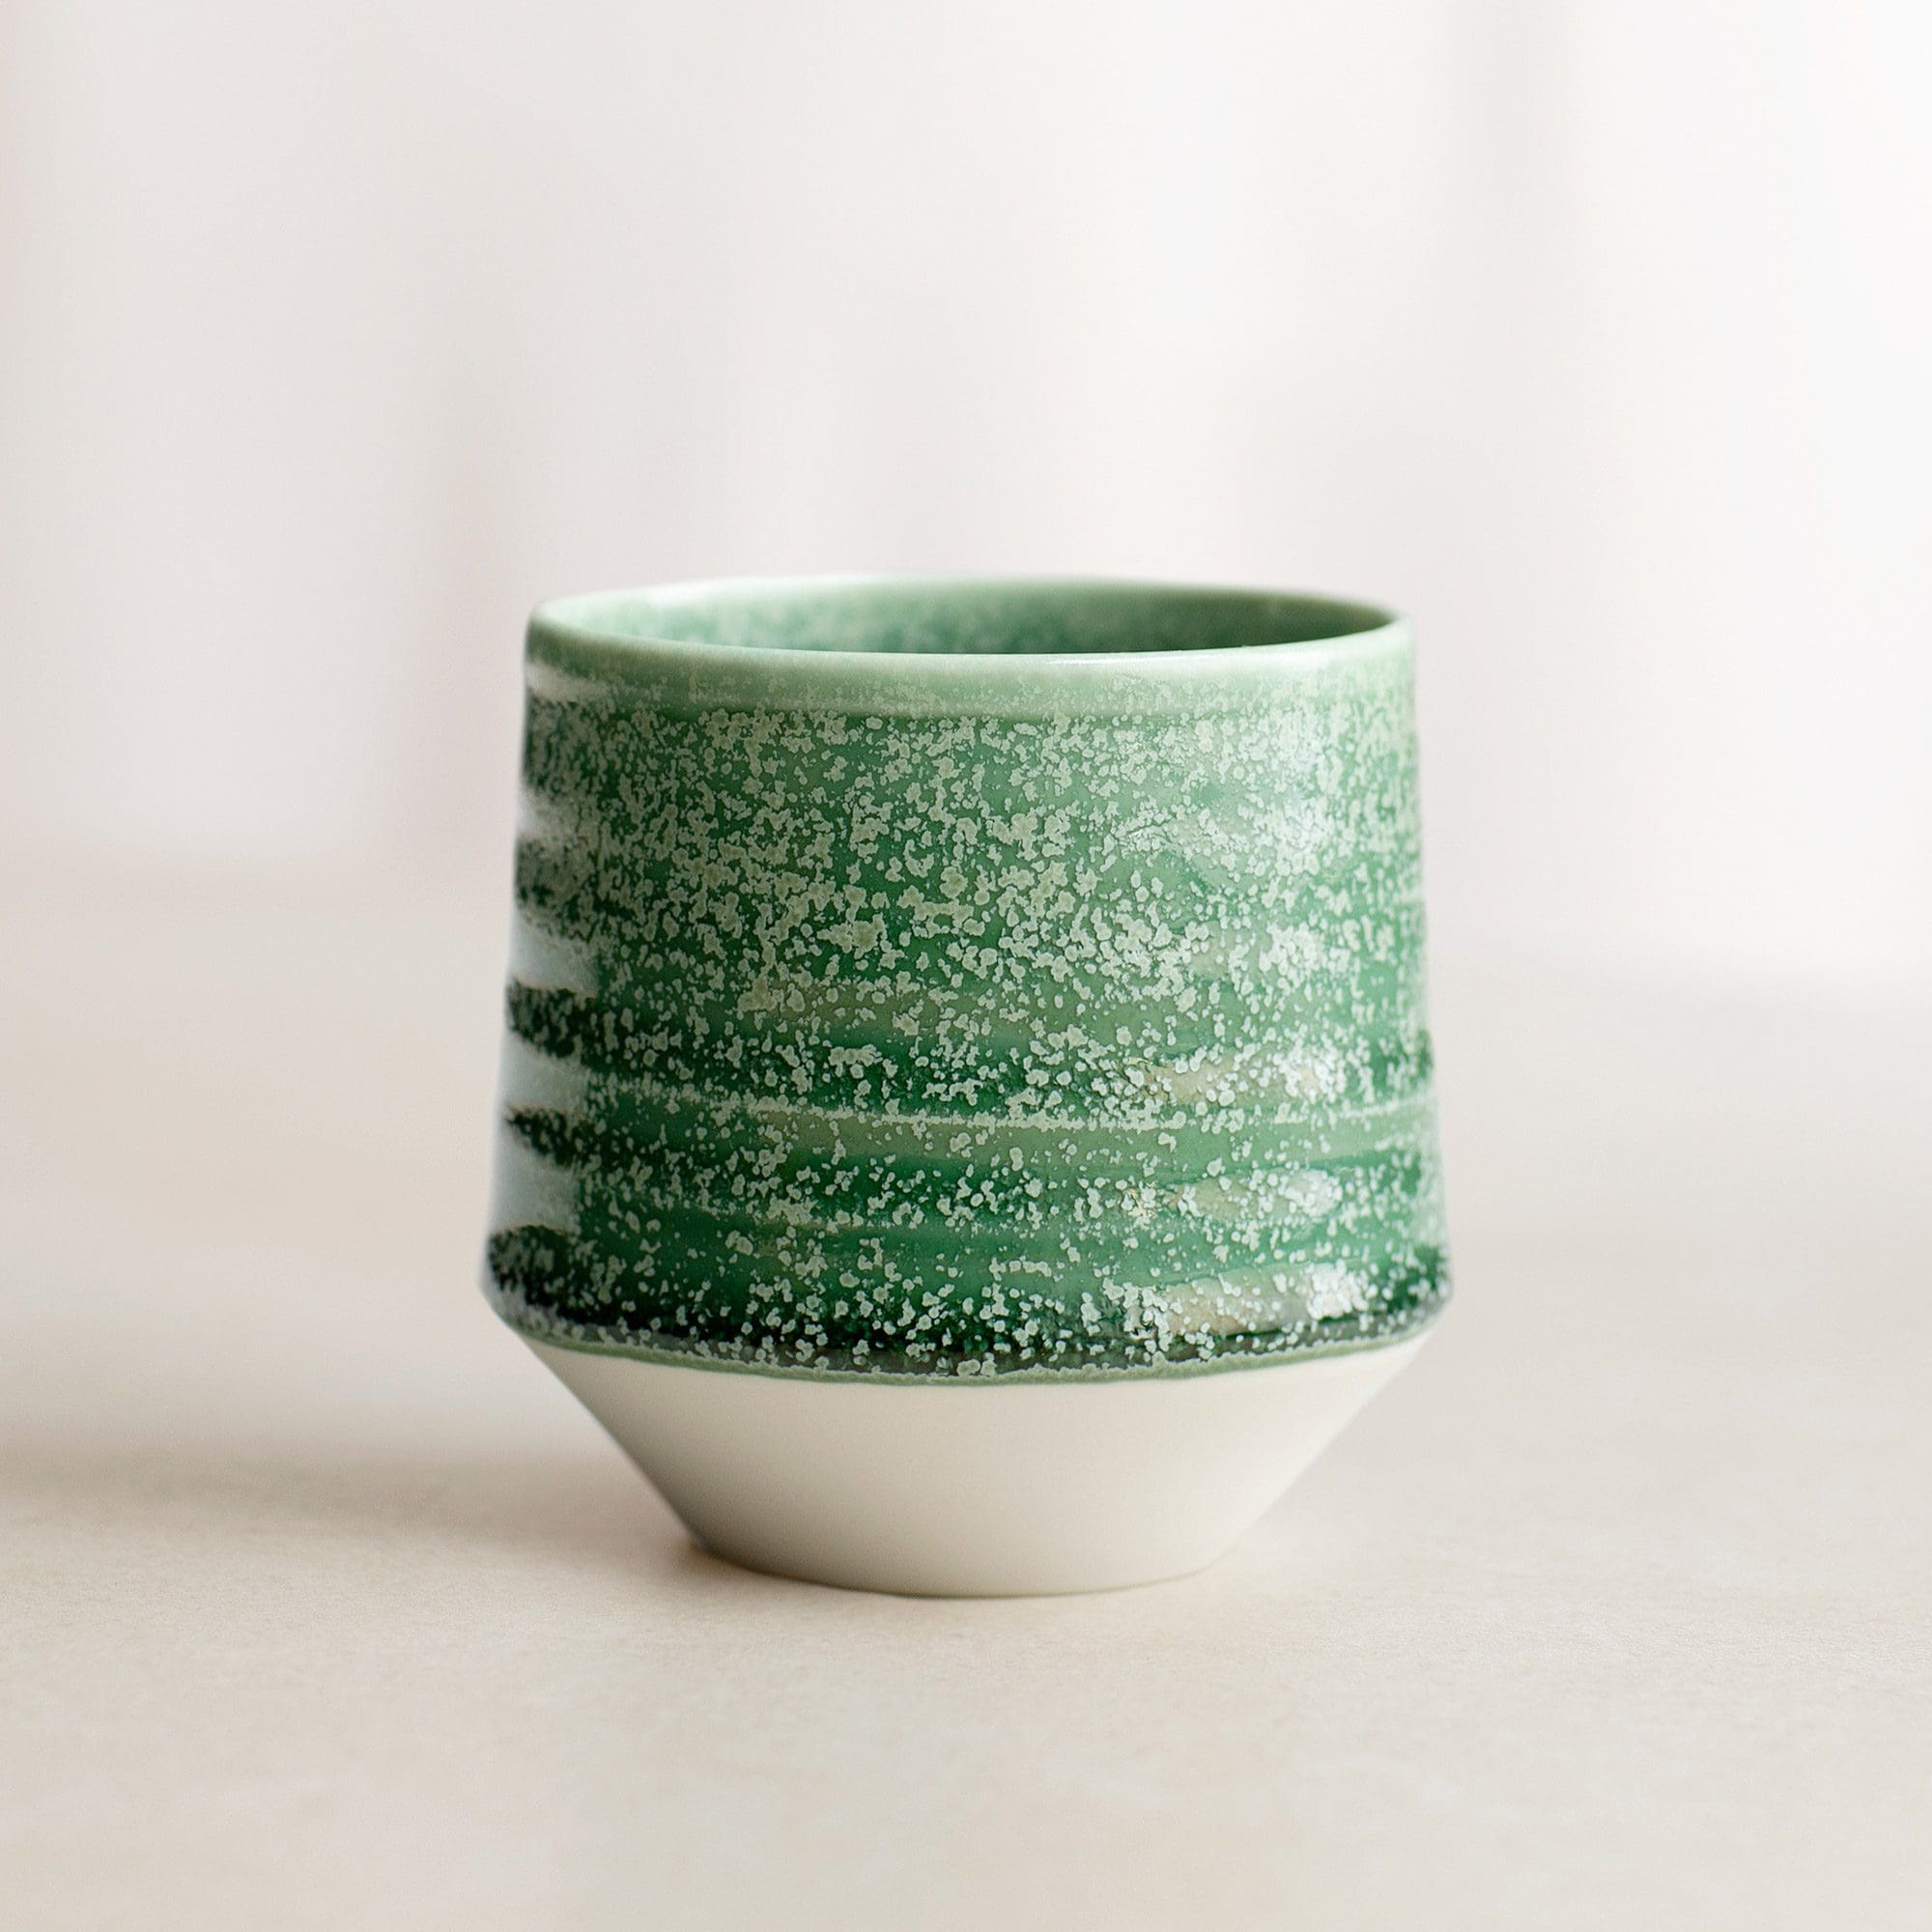 Sjøkrepsen mellomgrønn kopp. Foto: Anne Line Bakken